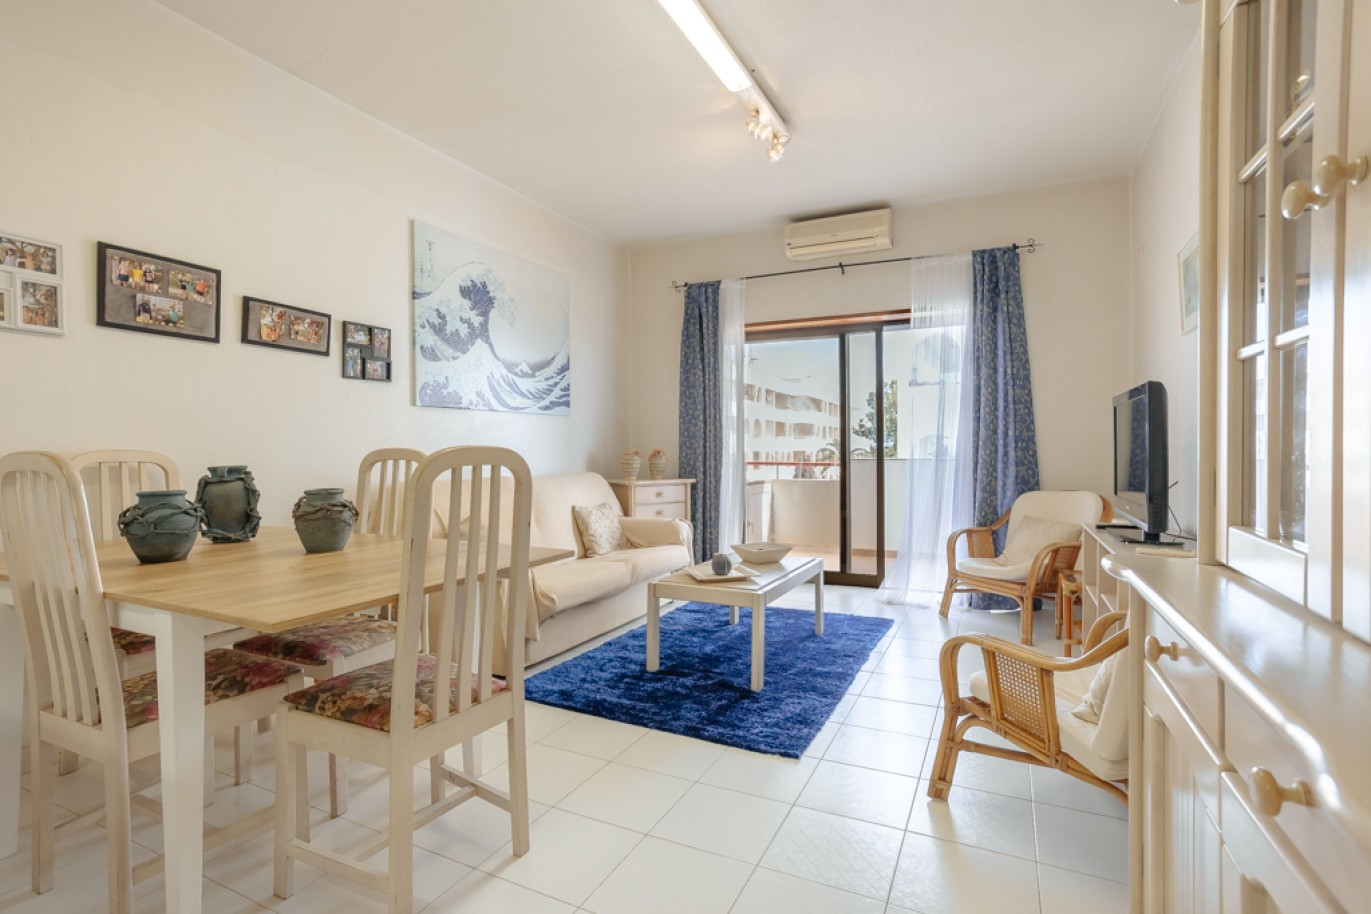 Apartamento com 1+1 quartos, com vista mar, para venda em Porches, Algarve_257045